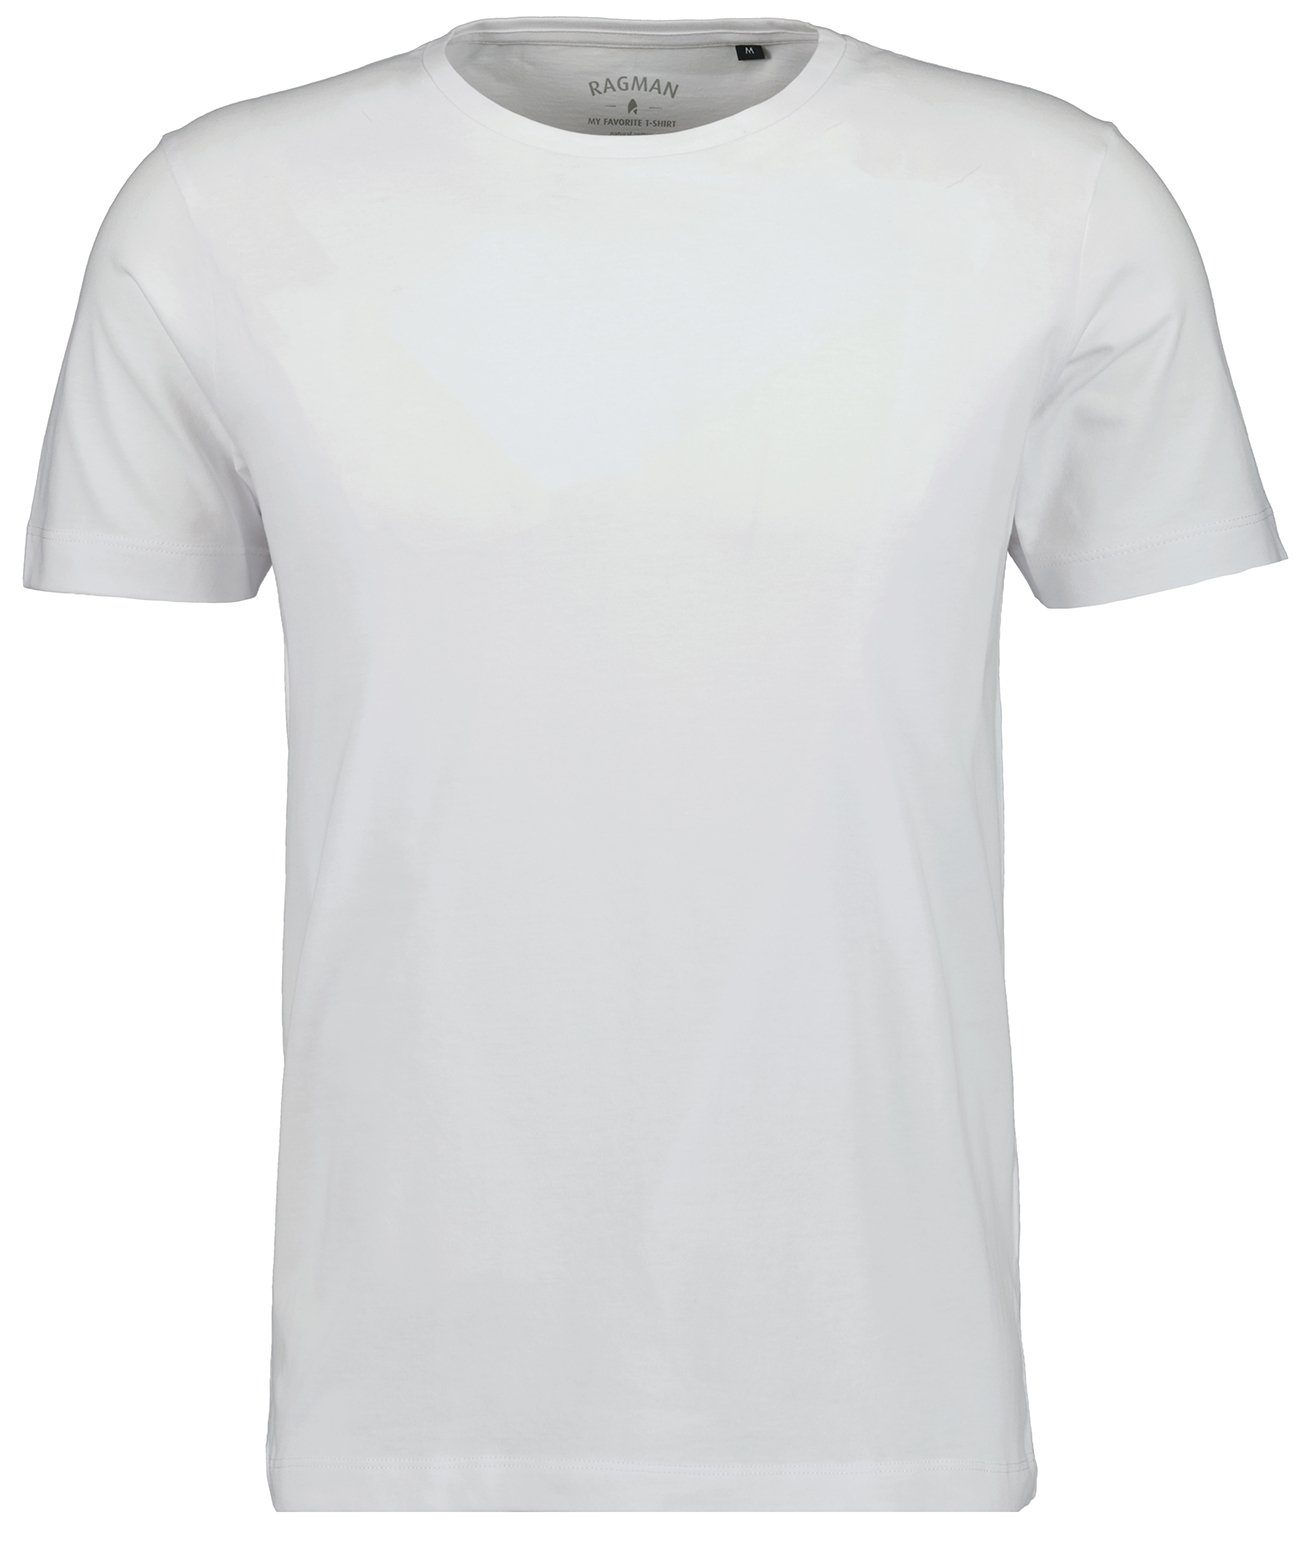 Weiss RAGMAN T-Shirt